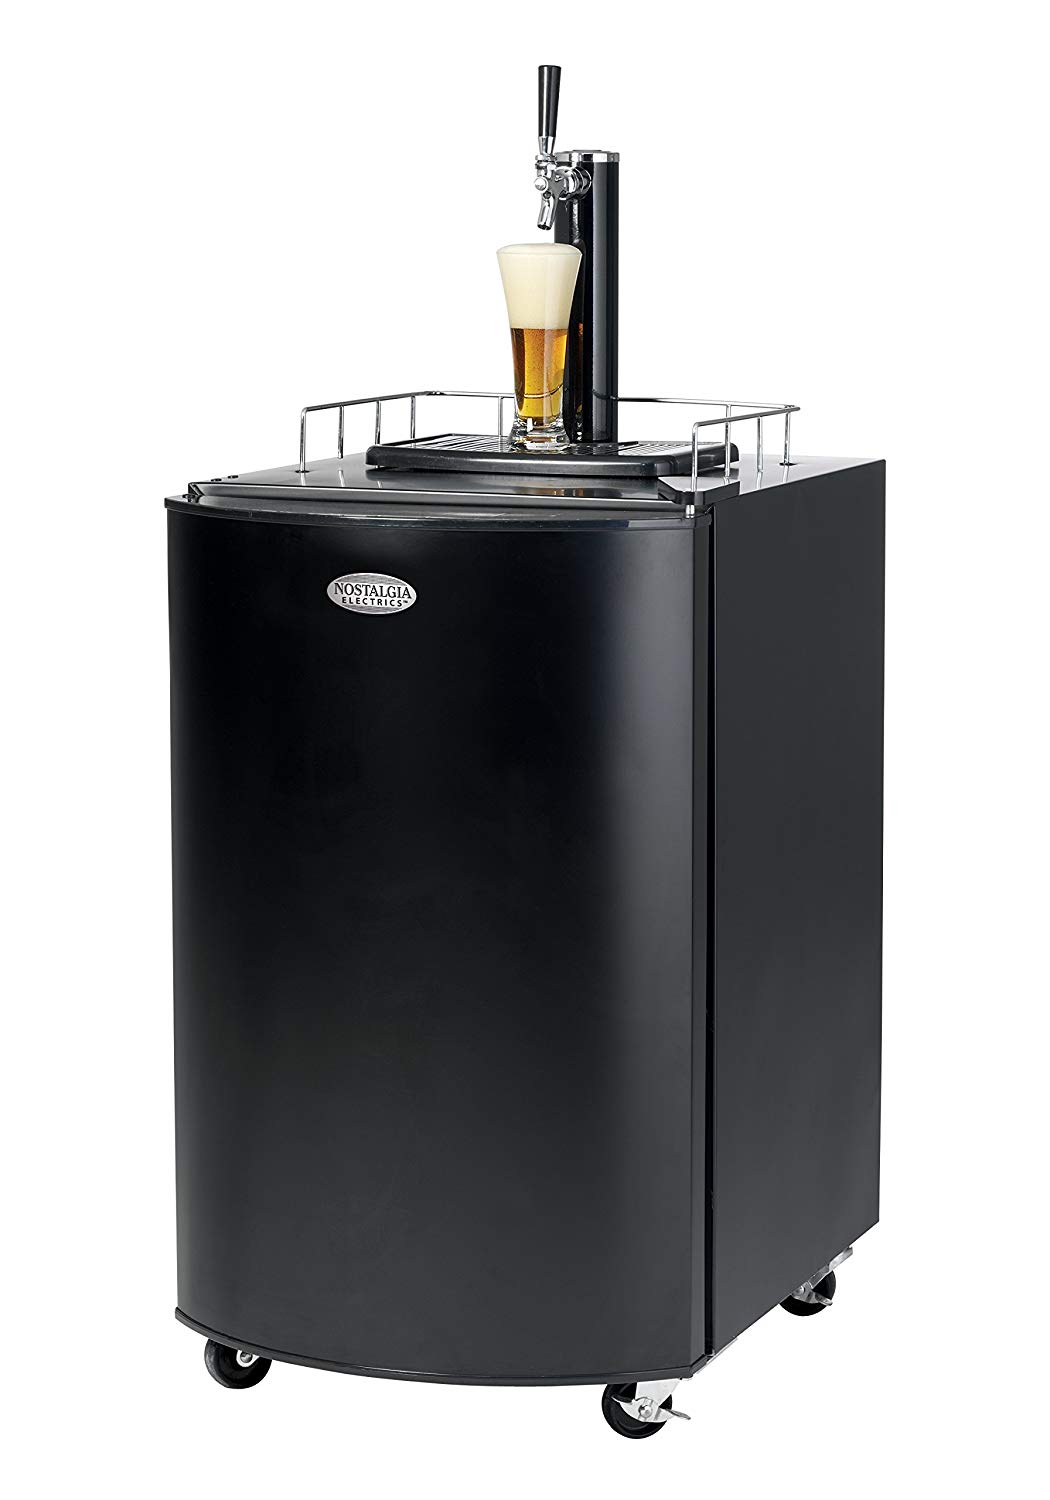 Nostalgia KRS2100 Full Size Kegorator Draft Beer Dispenser